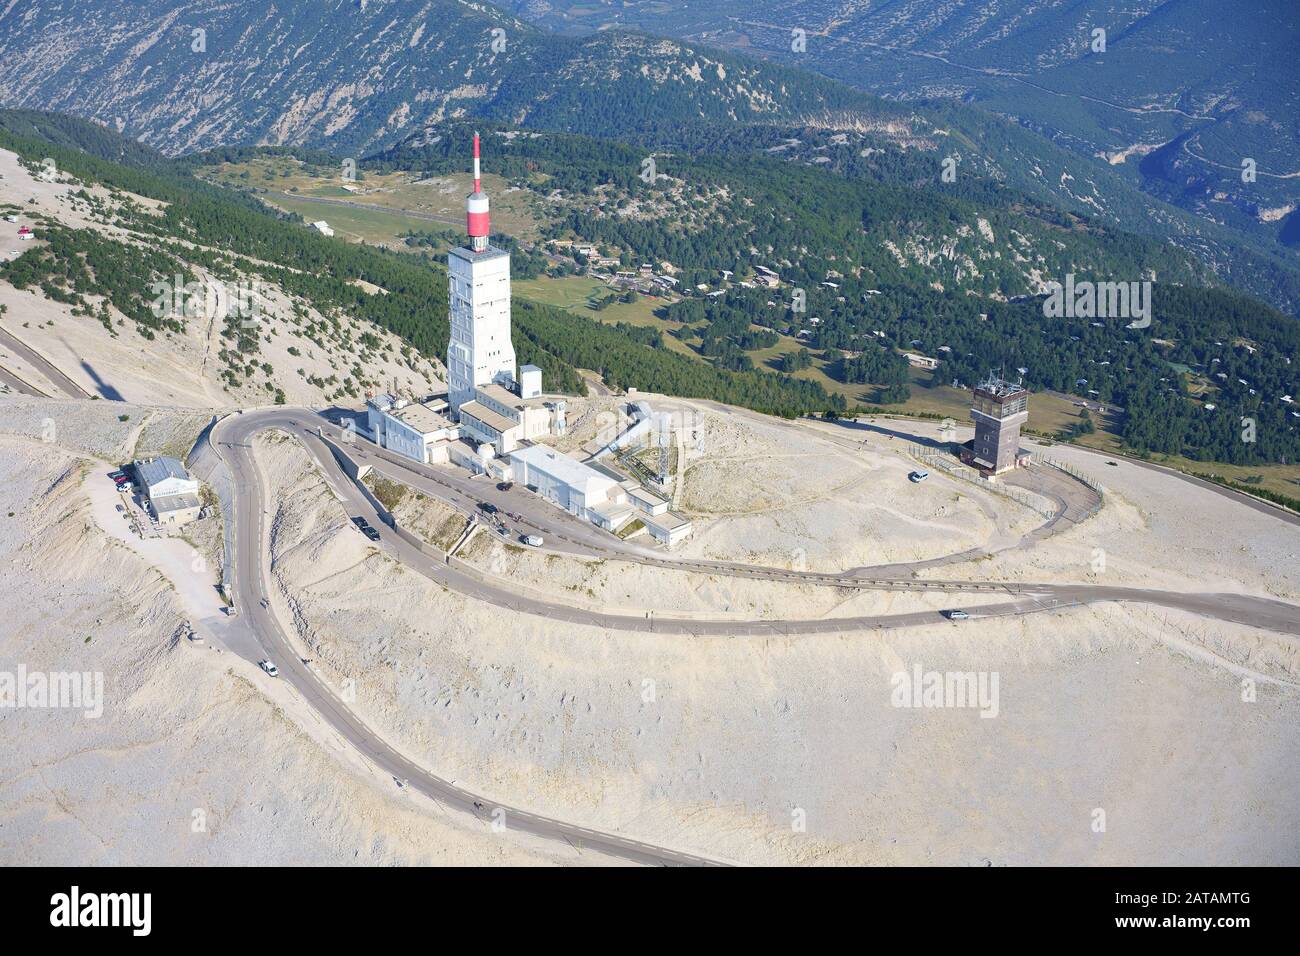 VISTA AEREA. Cima del Mont Ventoux (altitudine: 1909 metri) con la sua antenna di telecomunicazione. Bédoin, Vaucluse, Provence-Alpes-Côte d'Azur, Francia. Foto Stock